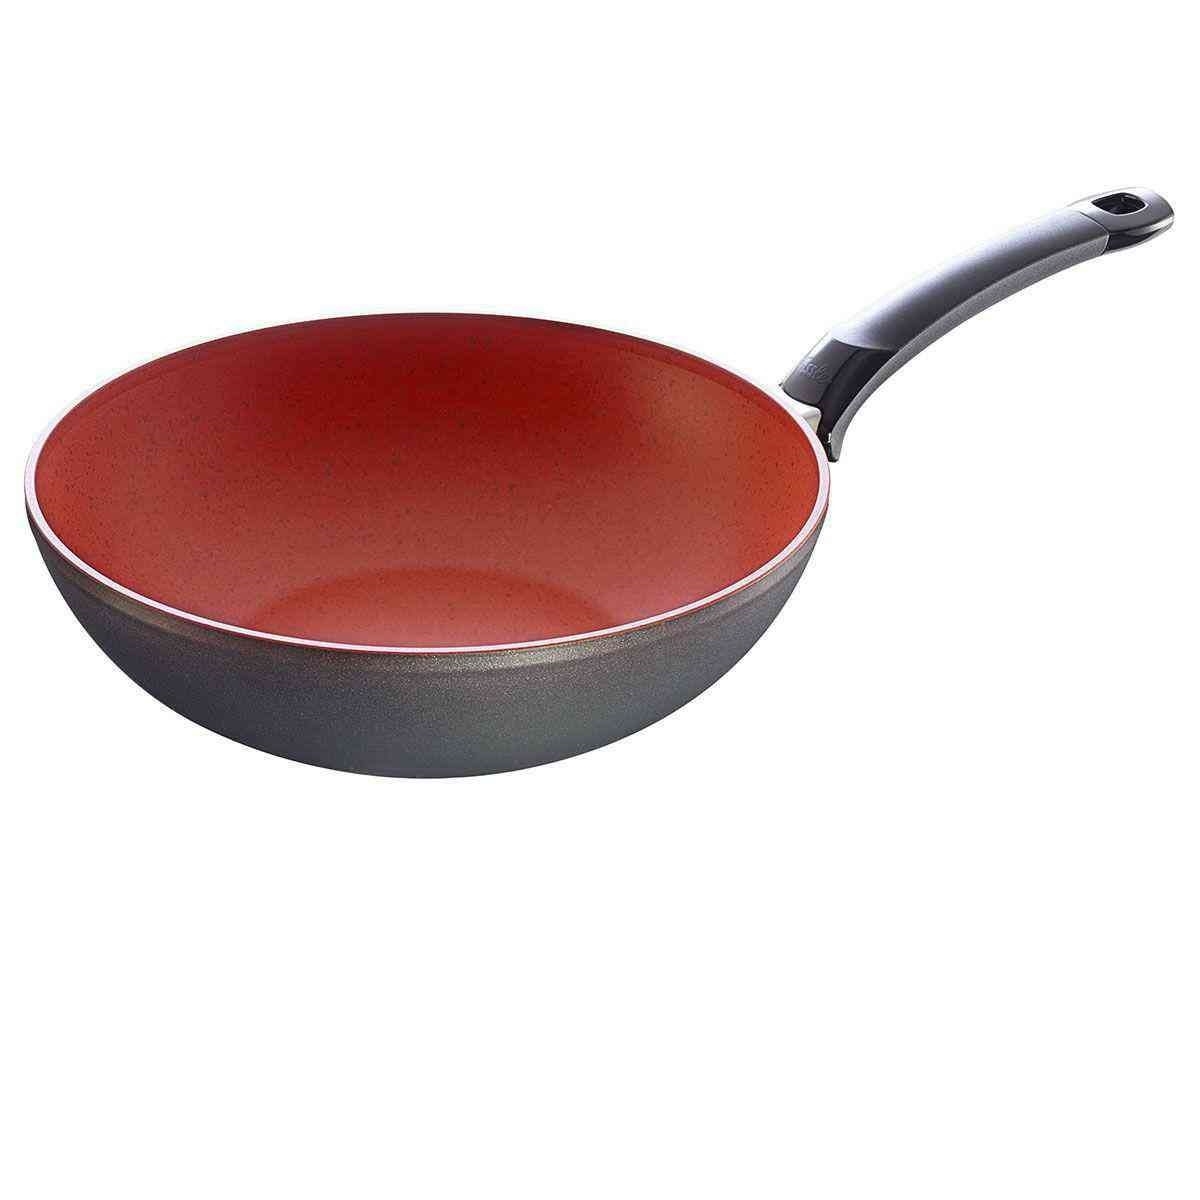 Fissler - SensoRed - wok 28 cm 3.7lt Fissler Pans and pots Products